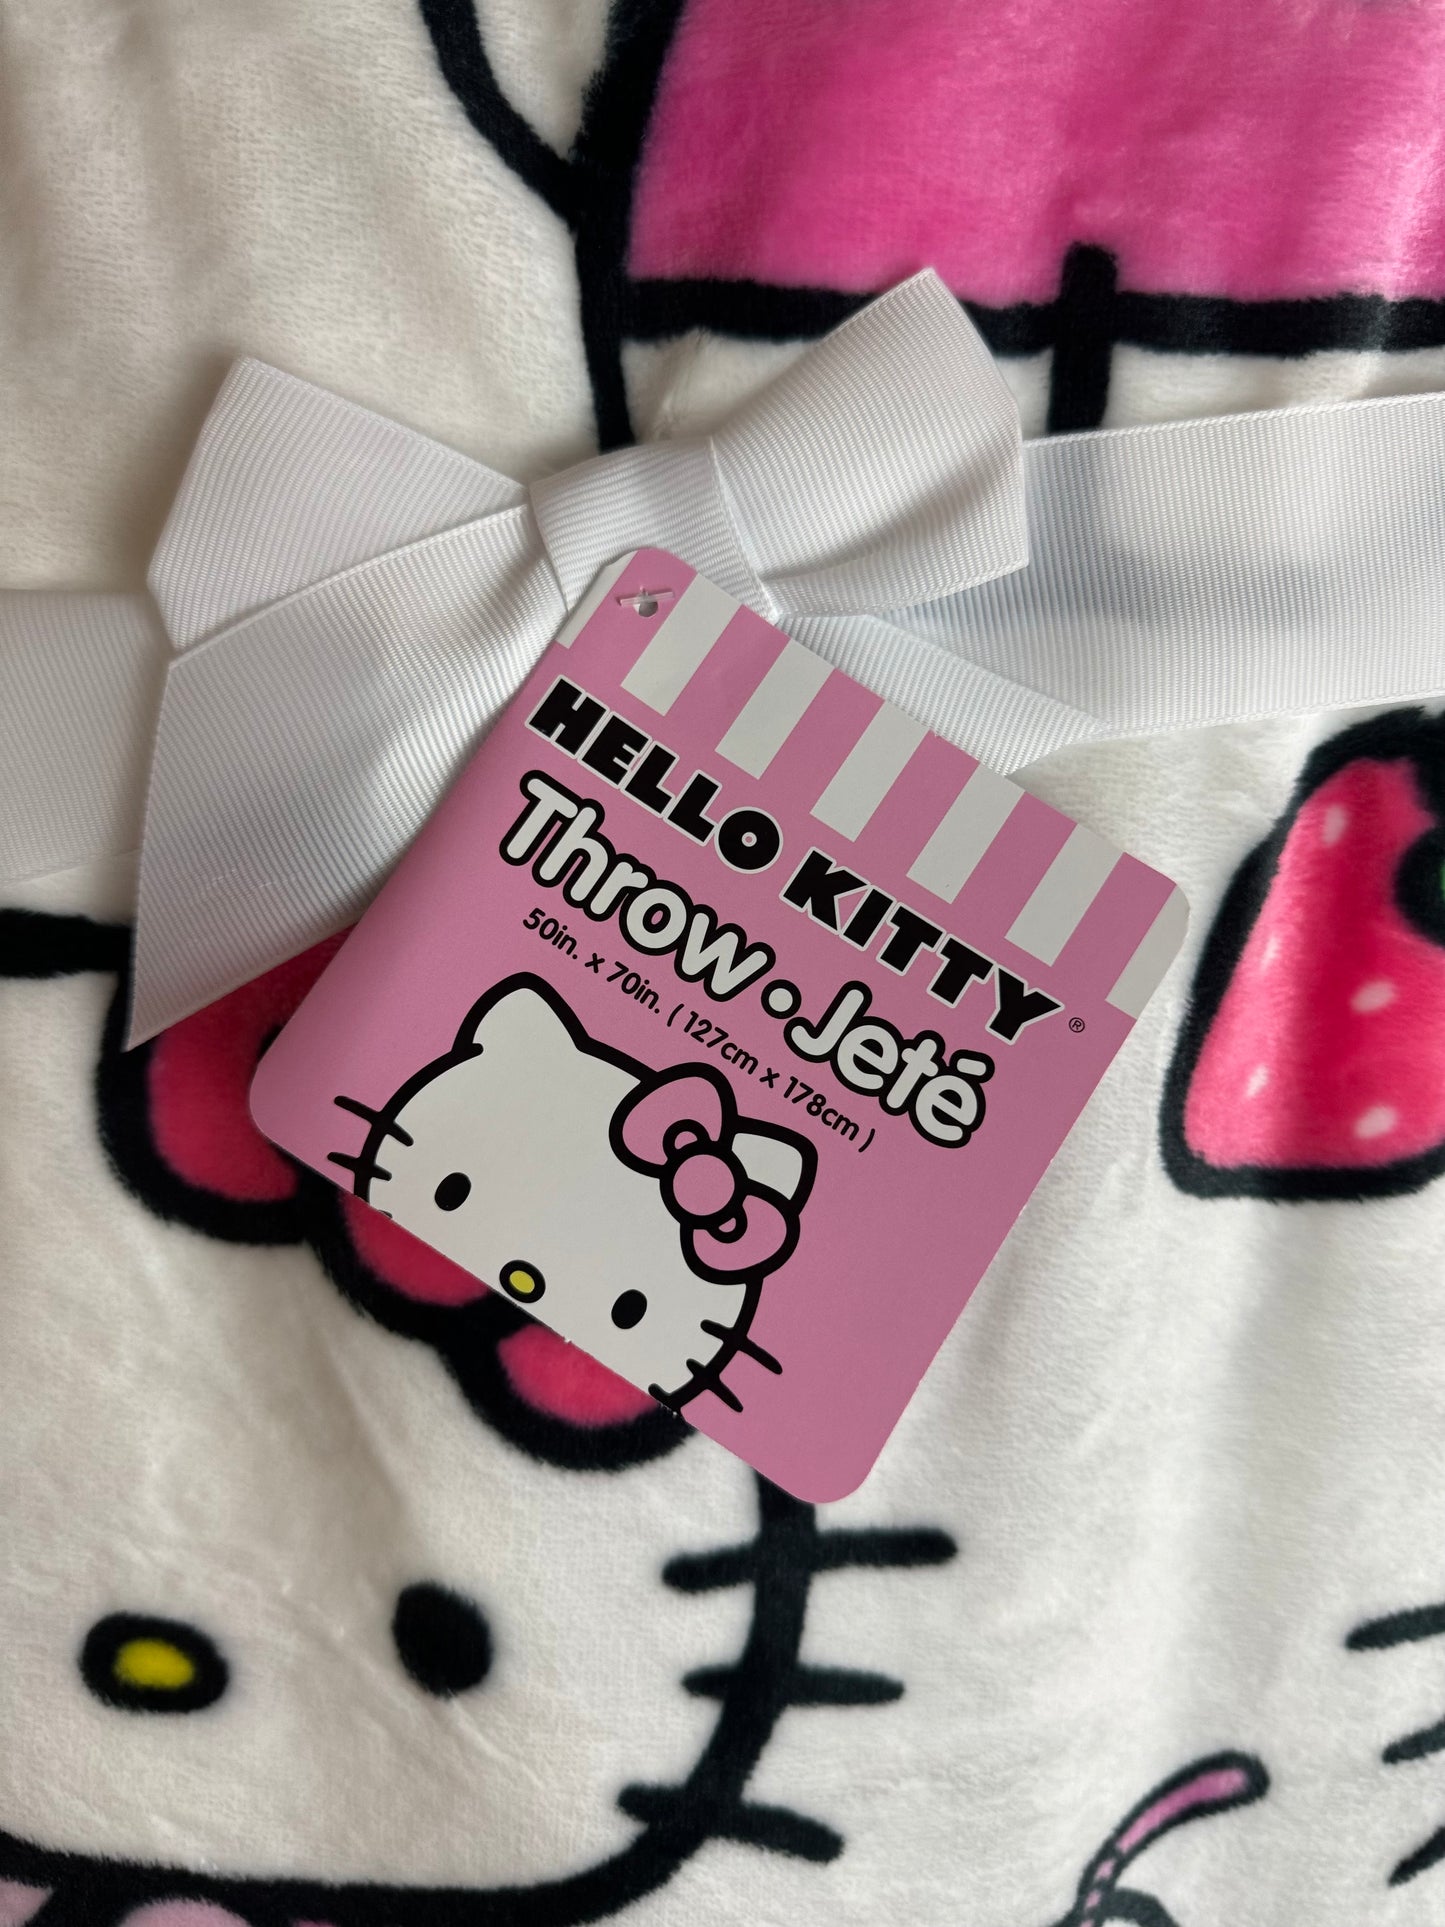 Hello Kitty Strawberry Throw Blanket